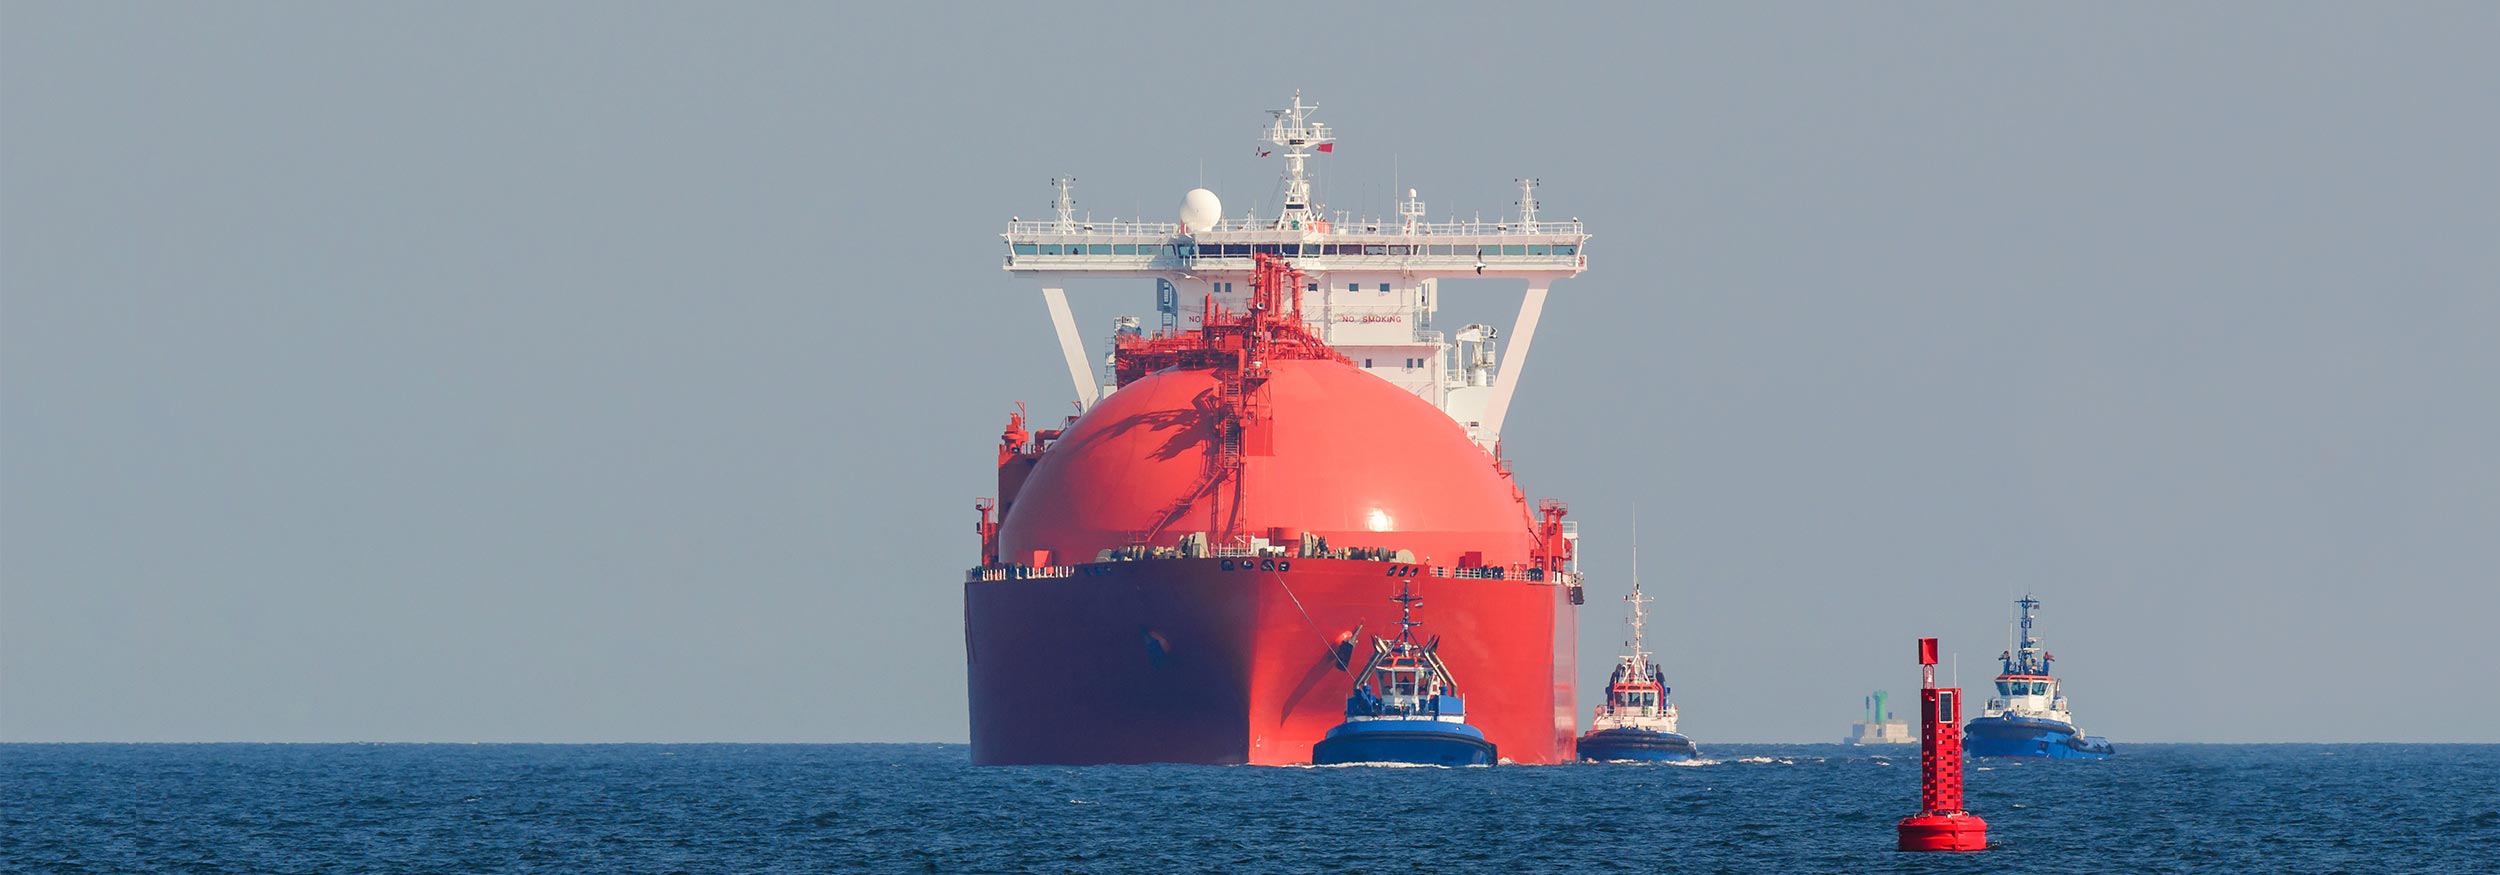 Schiffstanger mit LNG-Gas auf offenem Meer